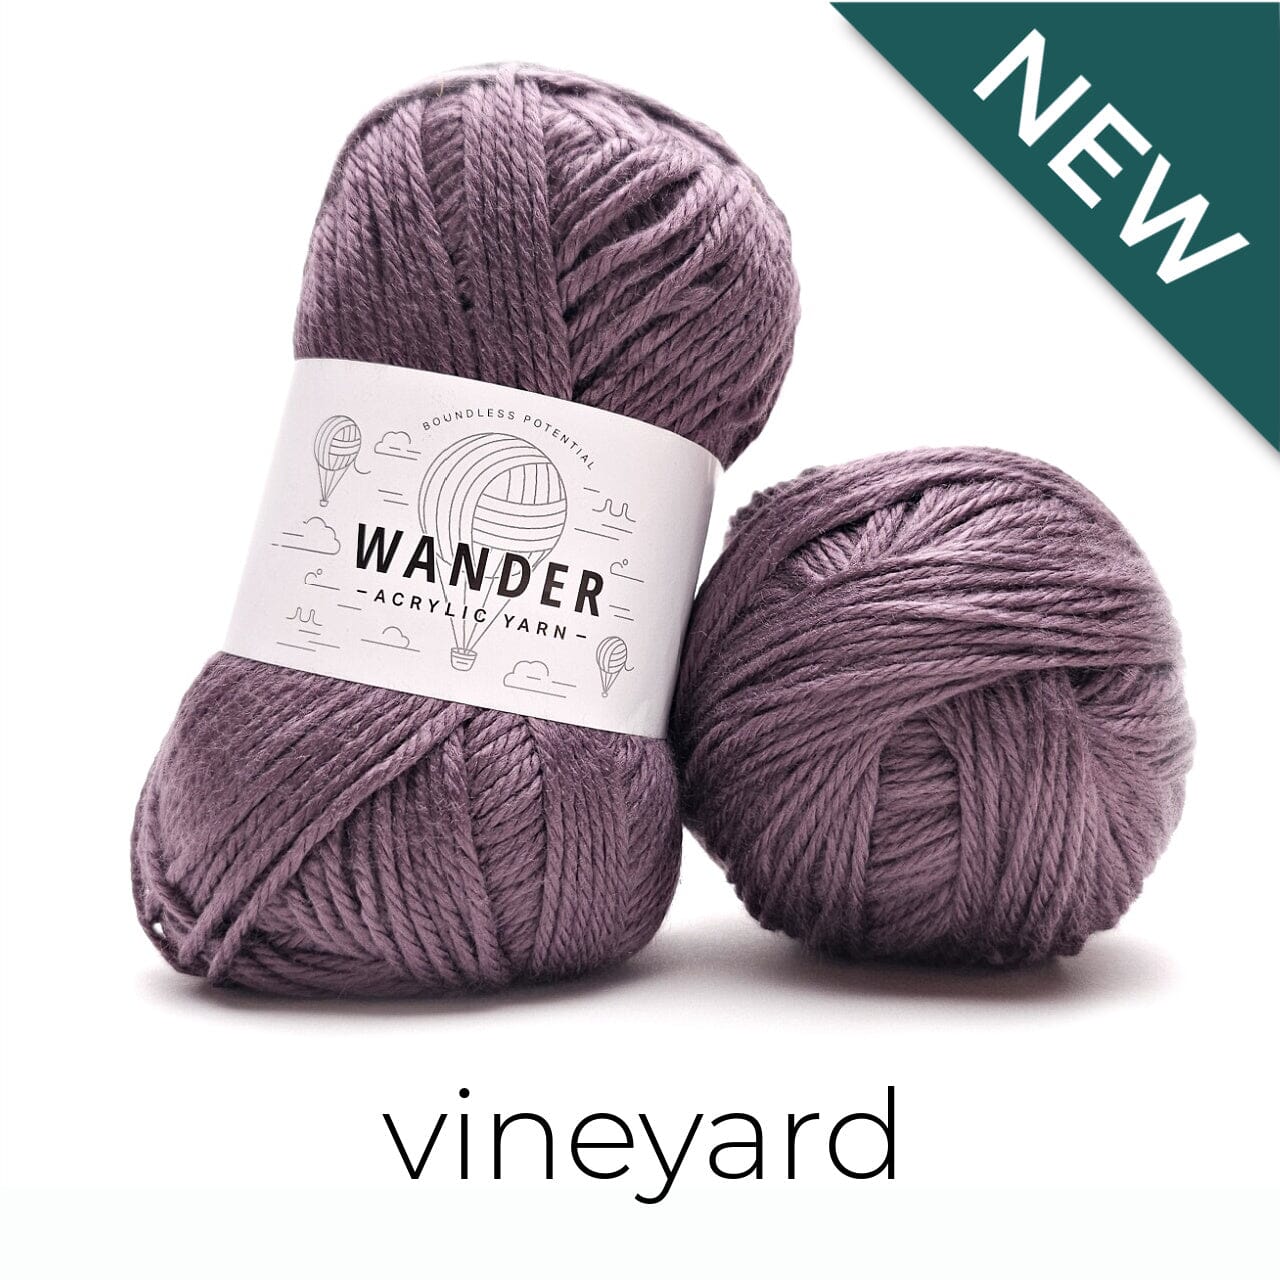 Wander Acrylic Yarn Yarn FurlsCrochet Vineyard 